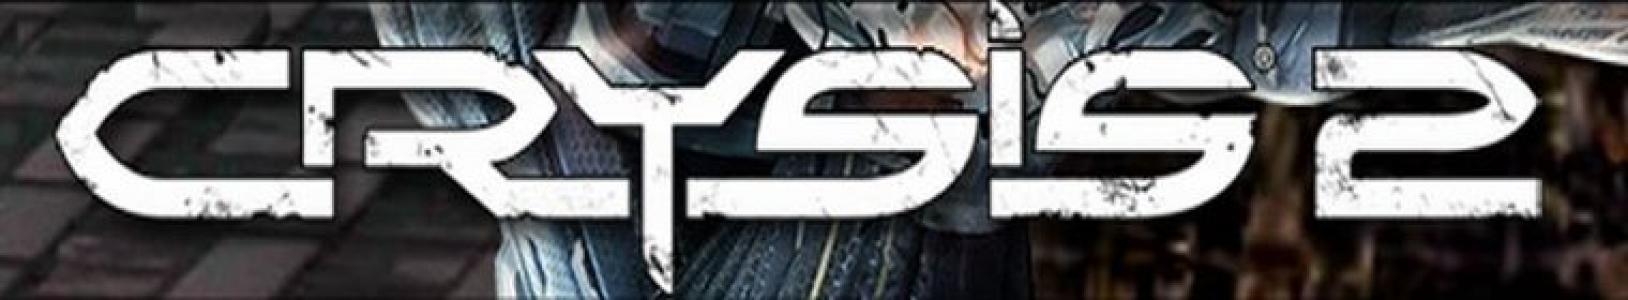 Crysis 2 banner